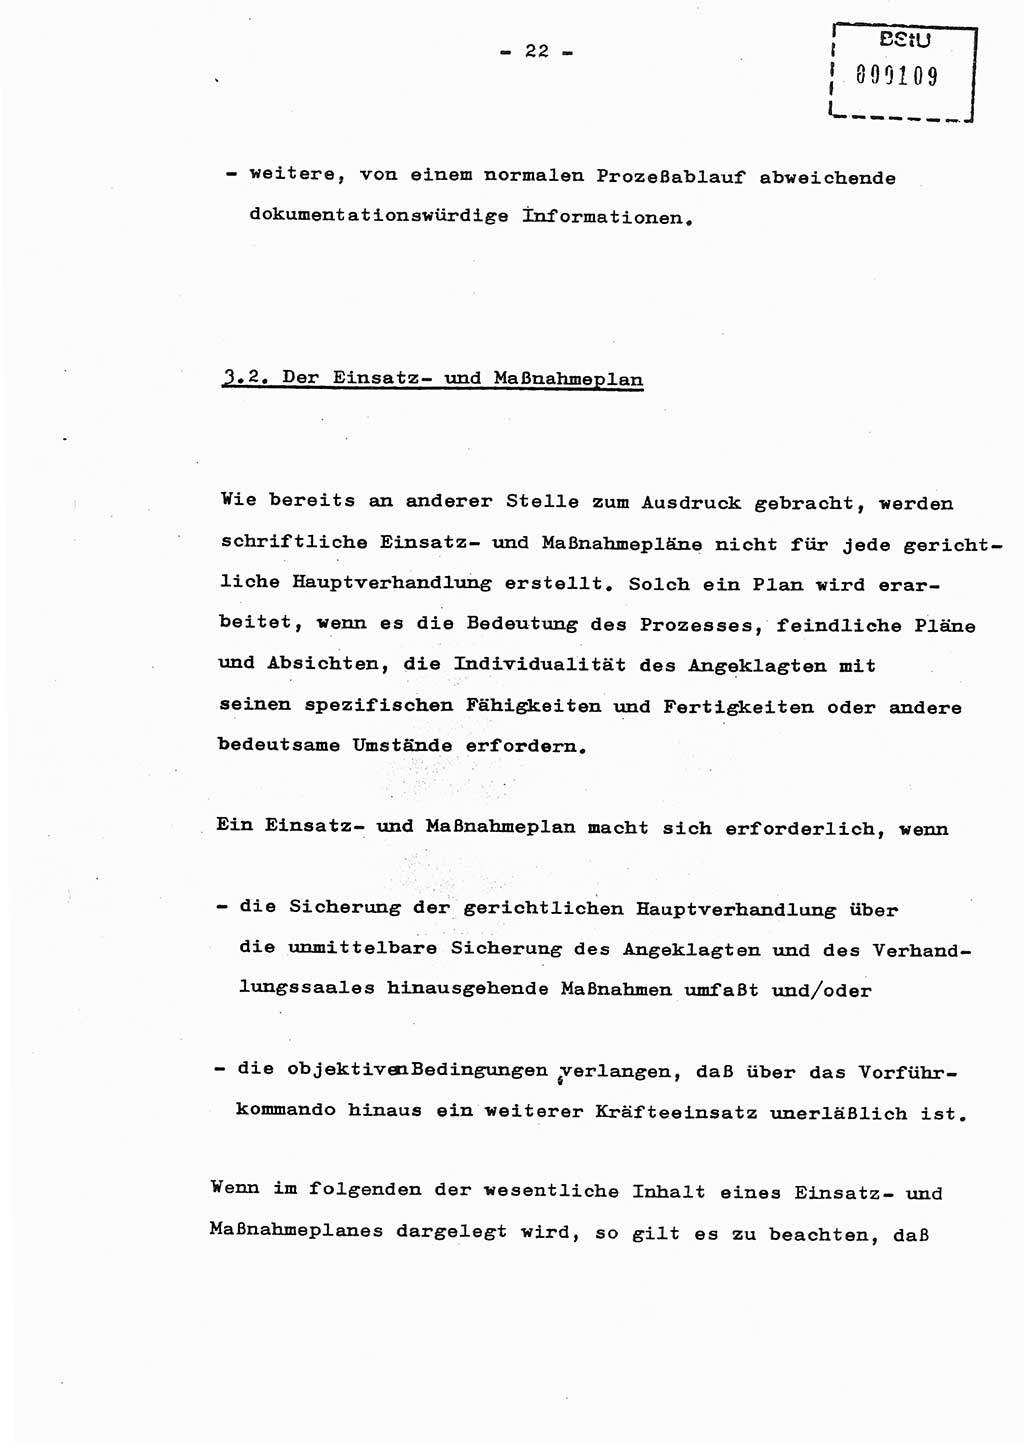 Schulungsmaterial Exemplar-Nr.: 8, Ministerium für Staatssicherheit [Deutsche Demokratische Republik (DDR)], Abteilung (Abt.) ⅩⅣ, Berlin 1987, Seite 22 (Sch.-Mat. Expl. 8 MfS DDR Abt. ⅩⅣ /87 1987, S. 22)